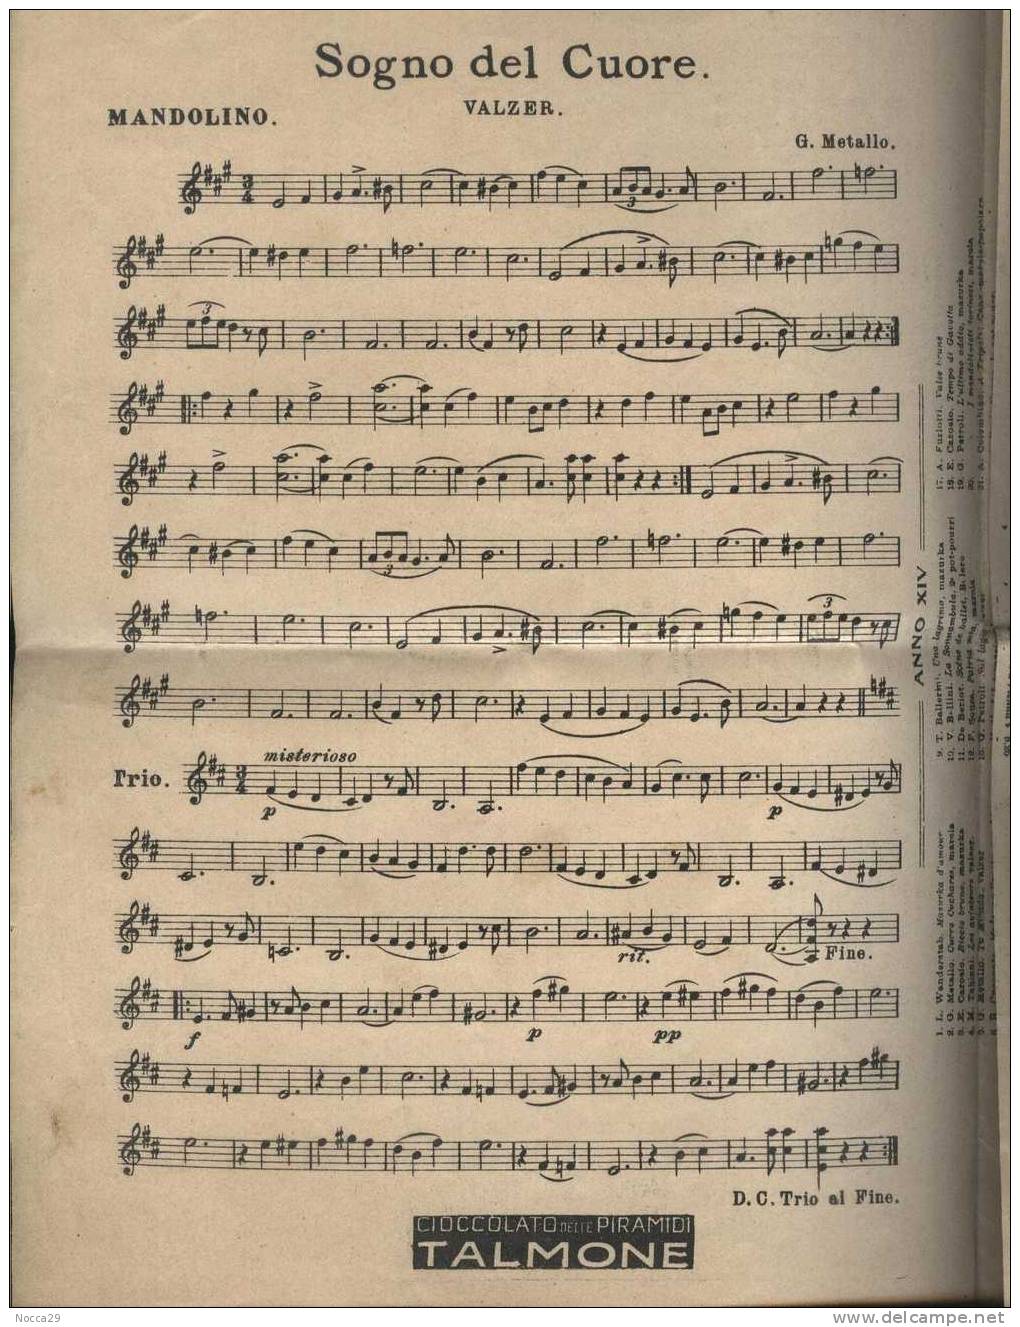 RIVISTA PIEGHEVOLE DEL 1912 IL MANDOLINISTA. MUSICHE PER MANDOLINO E CHITARRA - Música